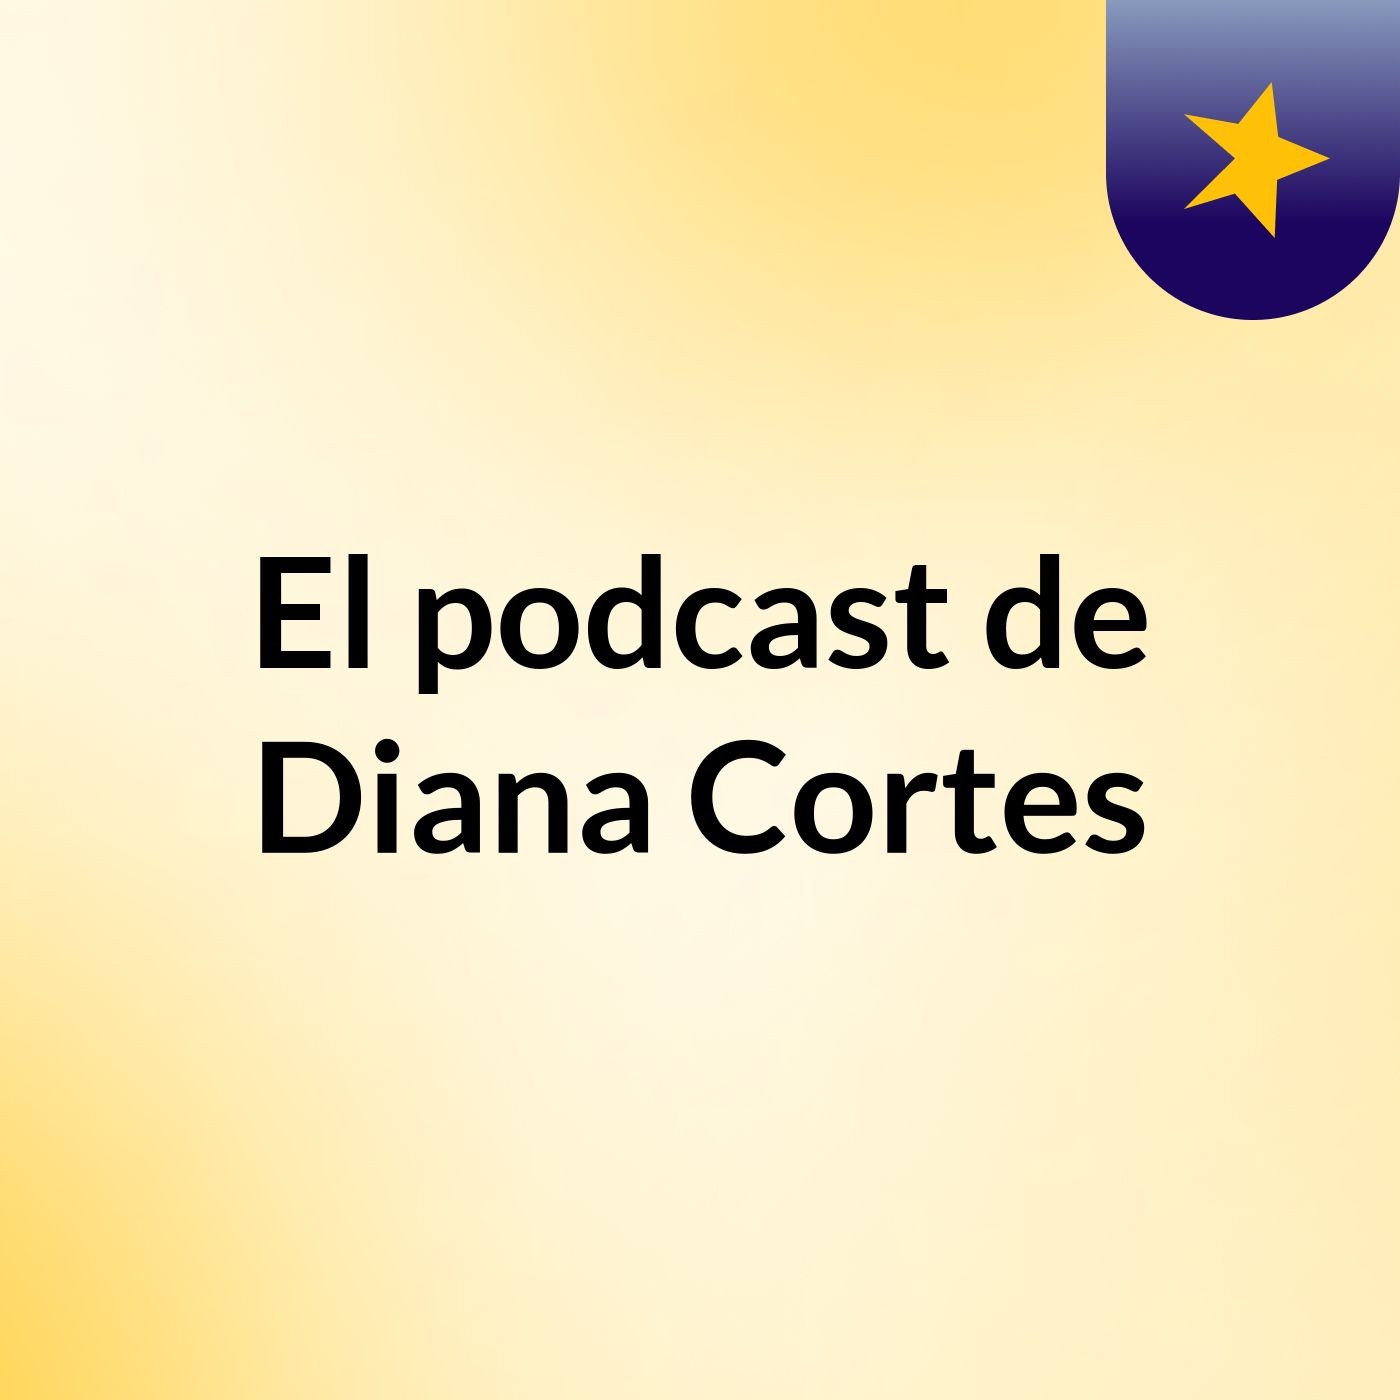 El podcast de Diana Cortes